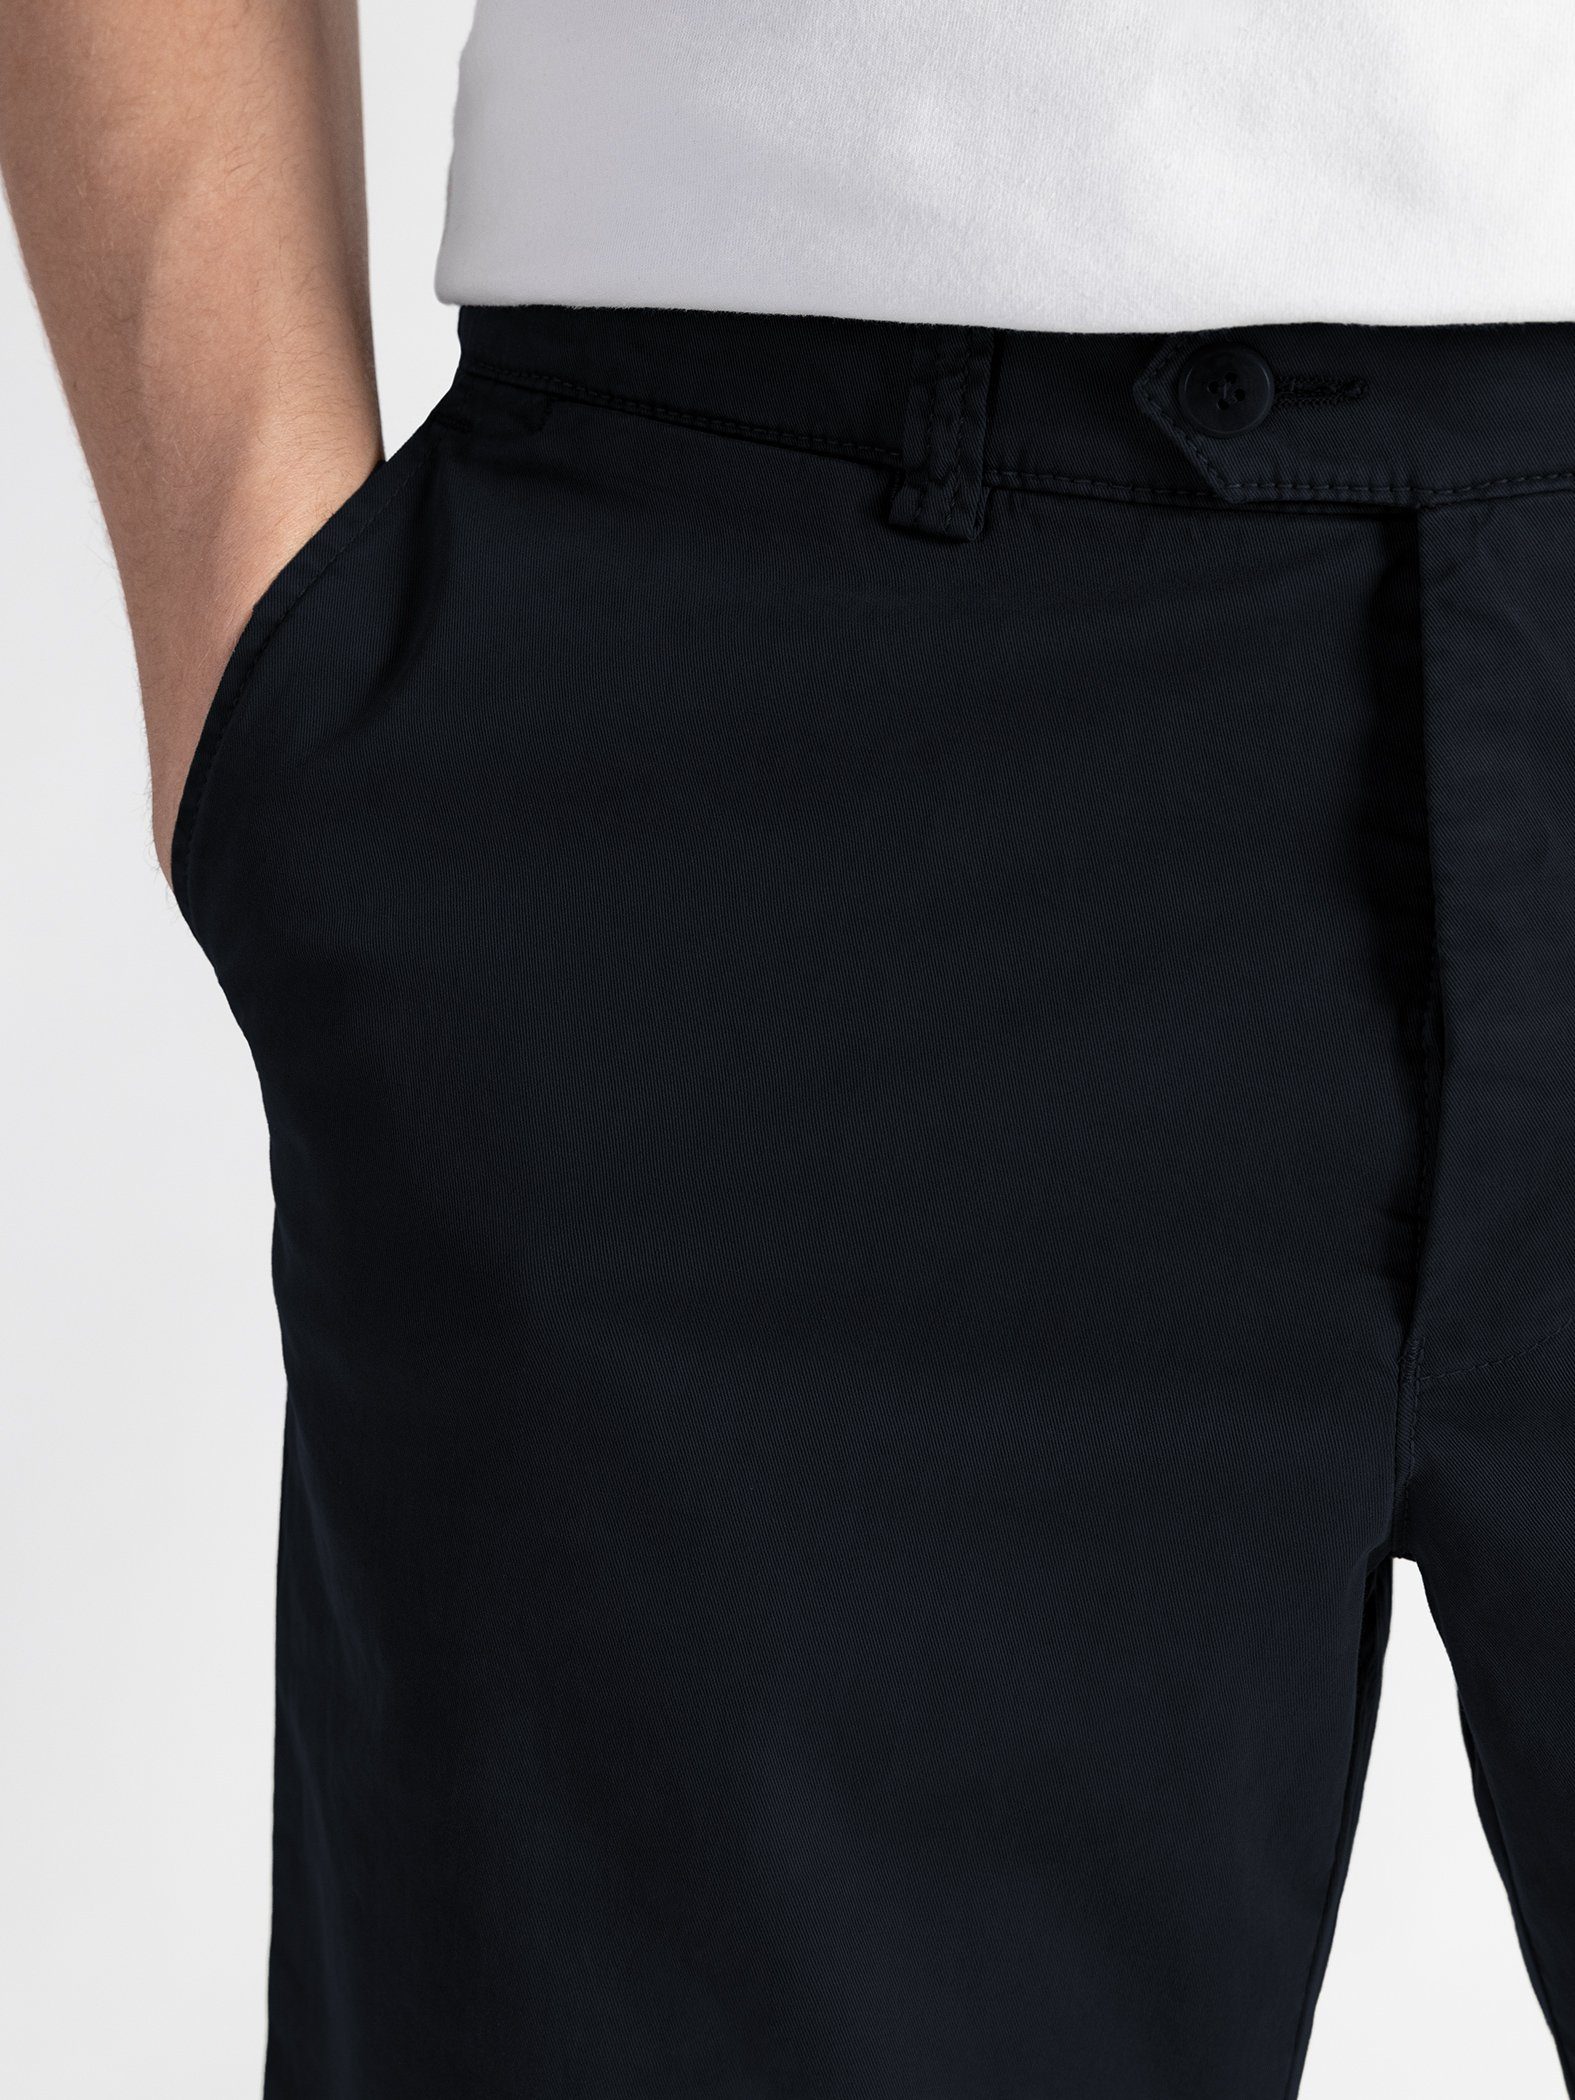 GOTS-zertifiziert Shorts Dunkelblau Shorts TwoMates mit Farbauswahl, elastischem Bund,